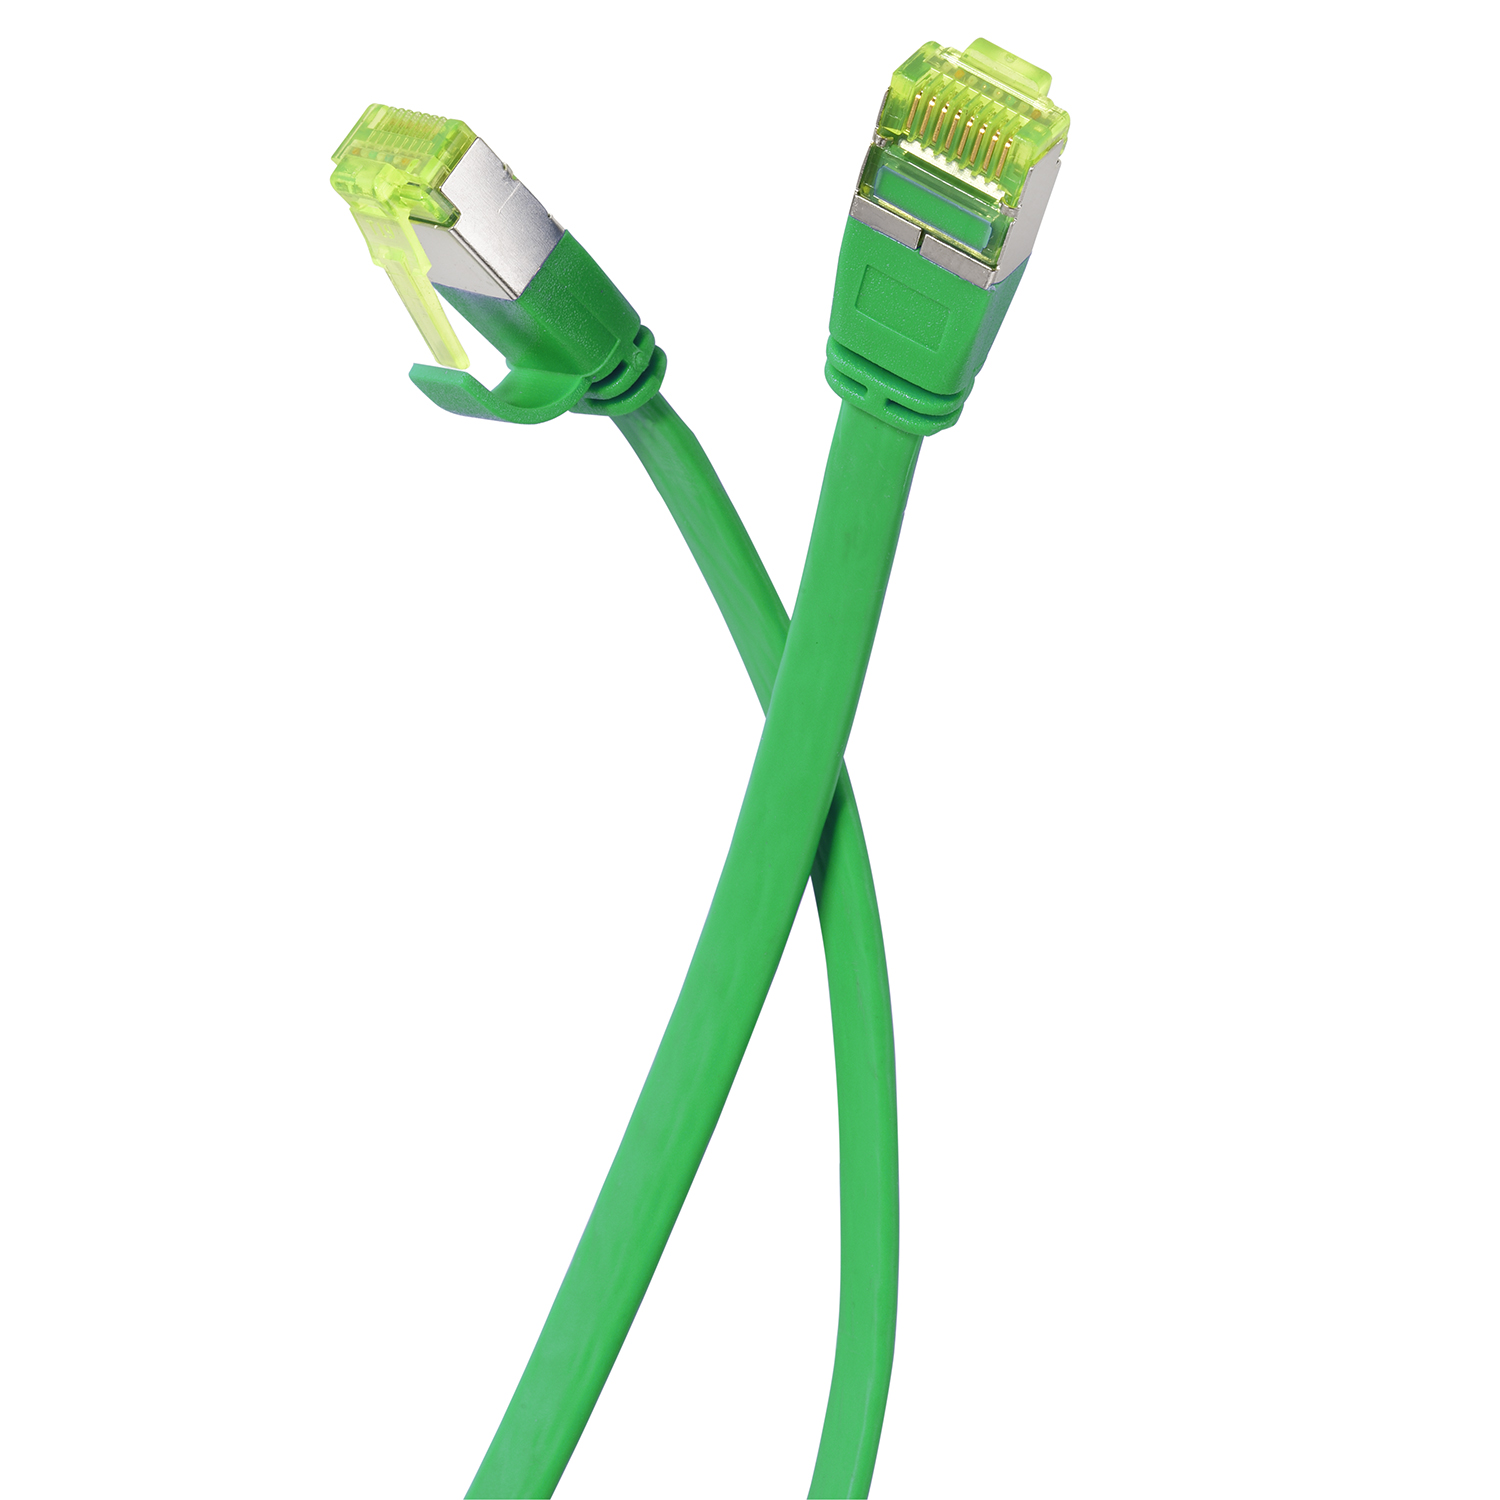 10er grün, U/FTP 10 / Flachkabel 7,5 Pack GBit, TPFNET 7,5m Netzwerkkabel, m Patchkabel